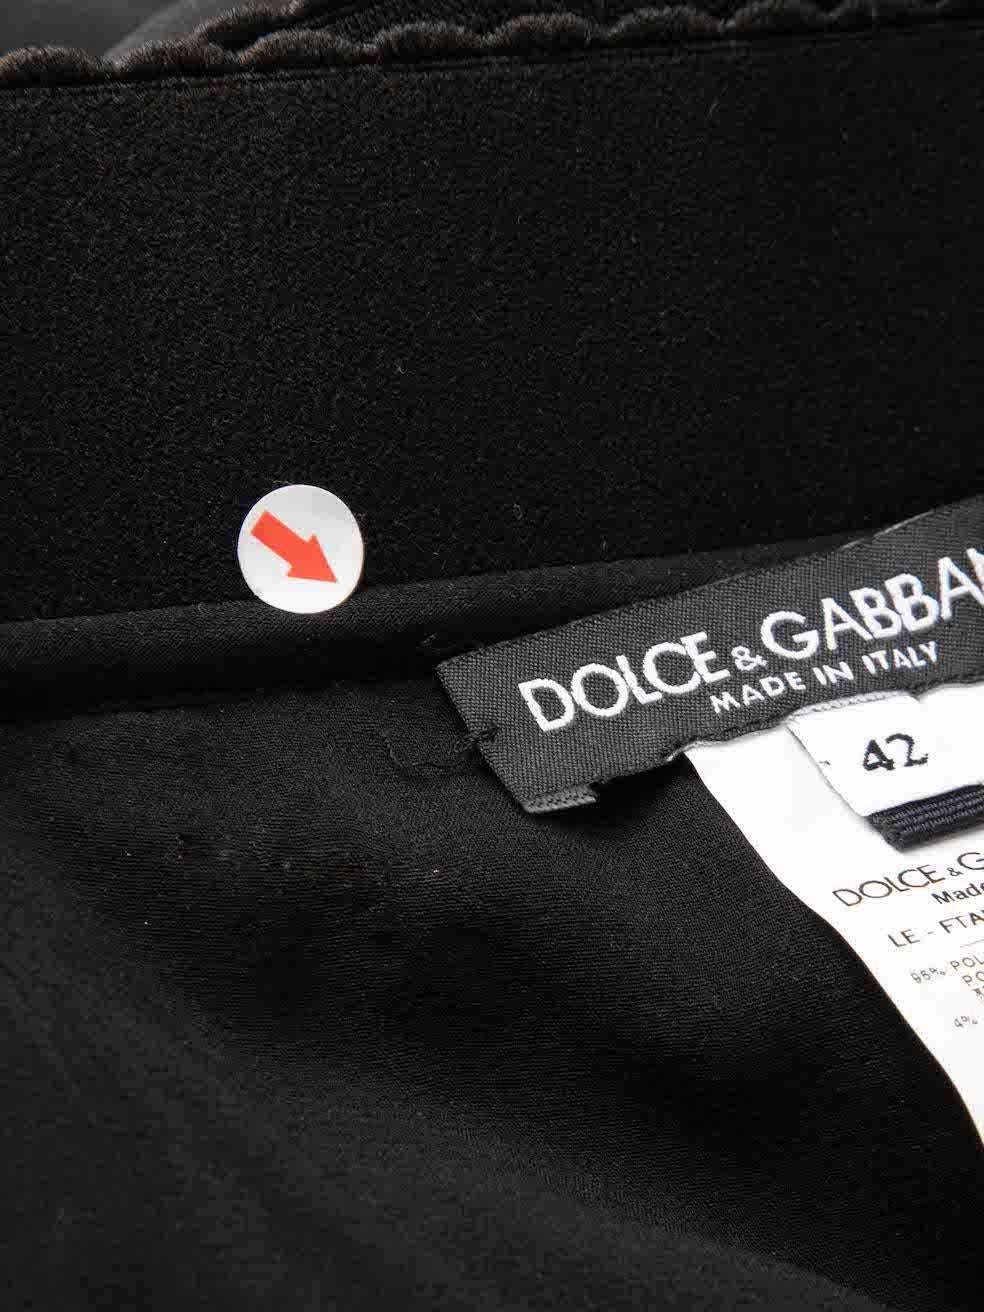 Dolce & Gabbana Gold Sequin Leopard Trouser Suit Size M For Sale 2